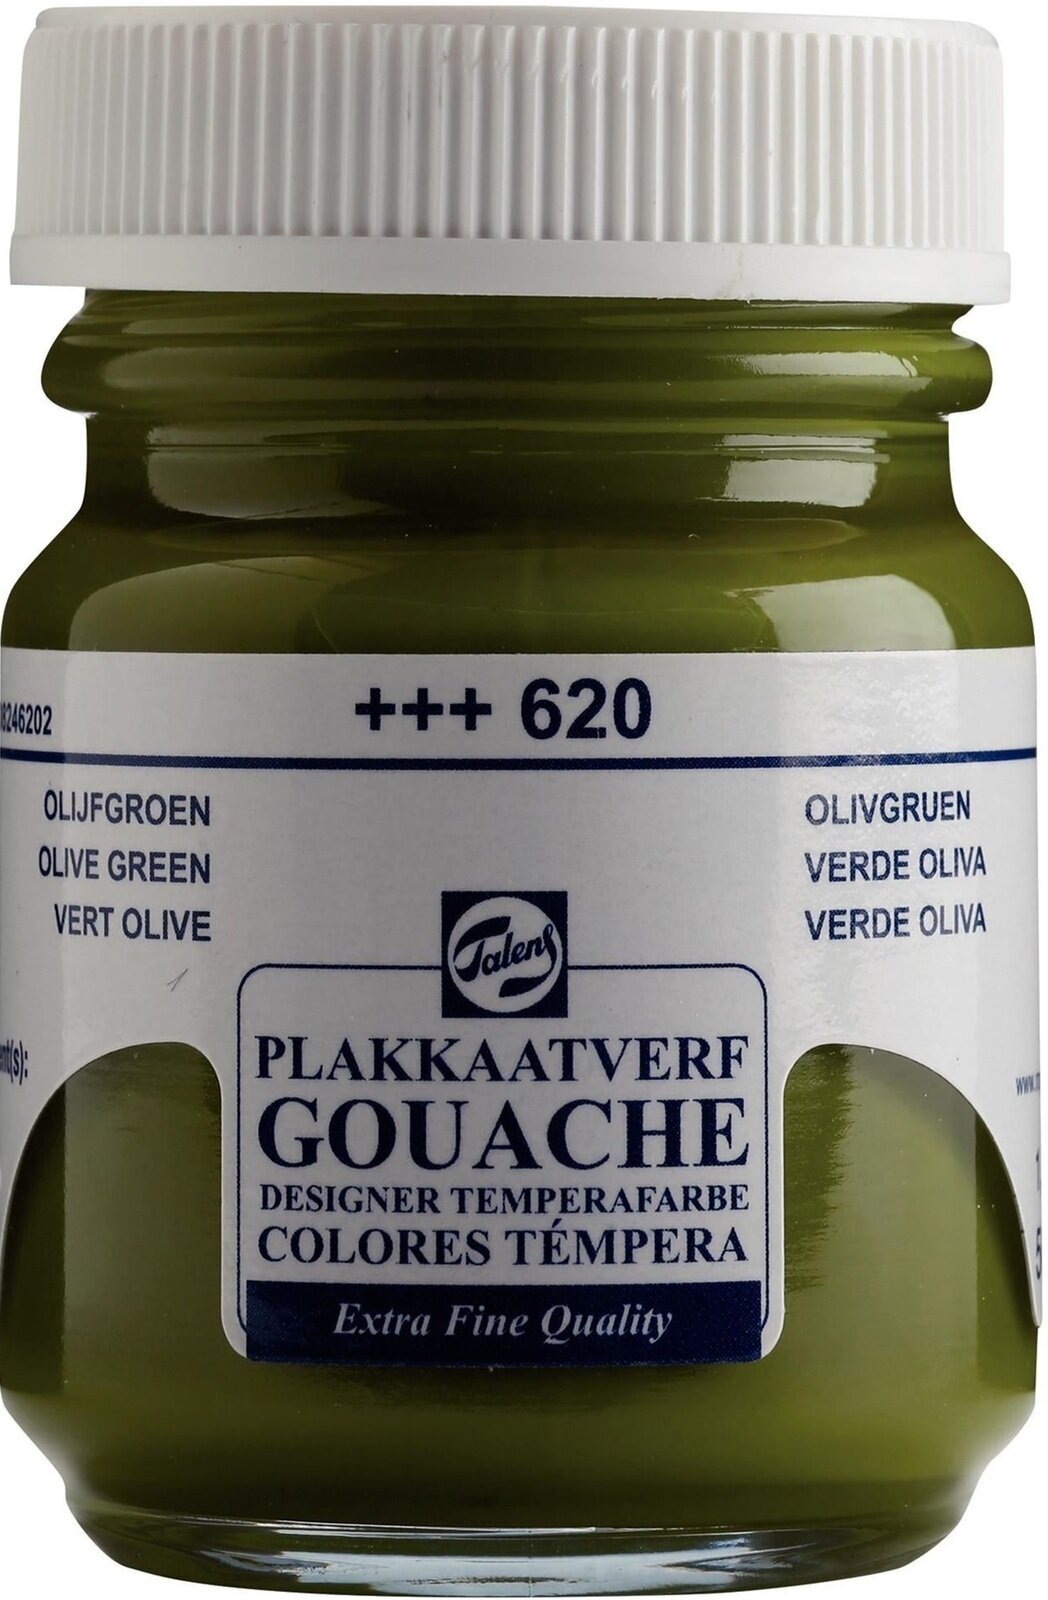 Gouache Paint Talens Gouache Extra Fine Gouache Paint 50 ml Olive Green